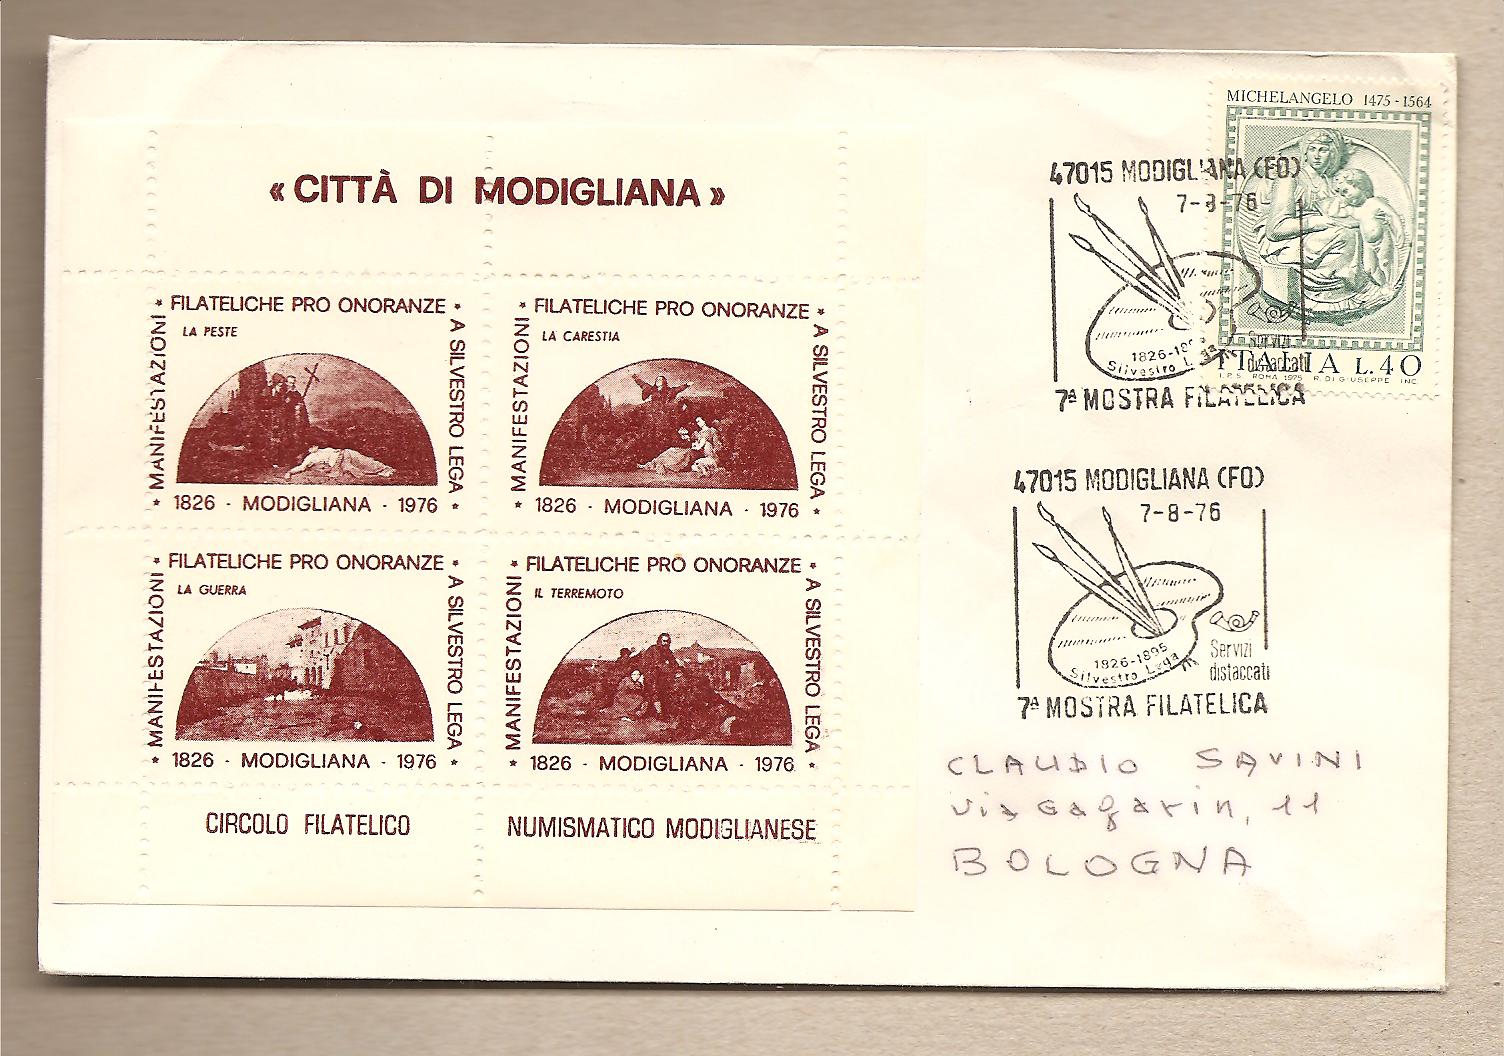 35912 - Italia - busta con annullo speciale e foglietto Erinnofilo: Citt di Modigliana (FO) - 7 Mostra filatelica - 1976